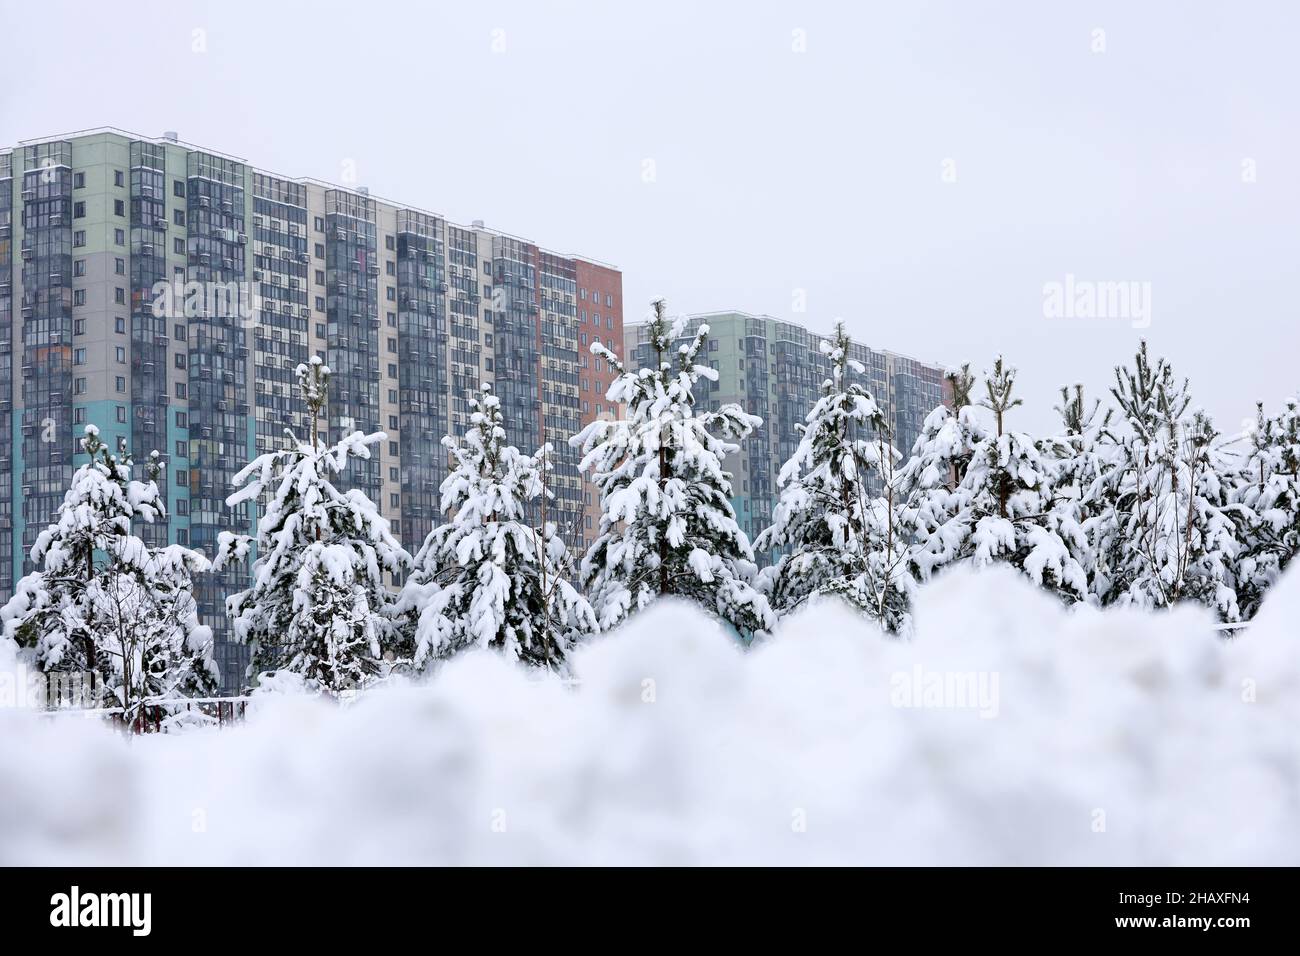 Barrio residencial en la ciudad de invierno, con vistas a pinos cubiertos de nieve y edificios de apartamentos. Bienes raíces, elegir casa o alquilar propiedad Foto de stock